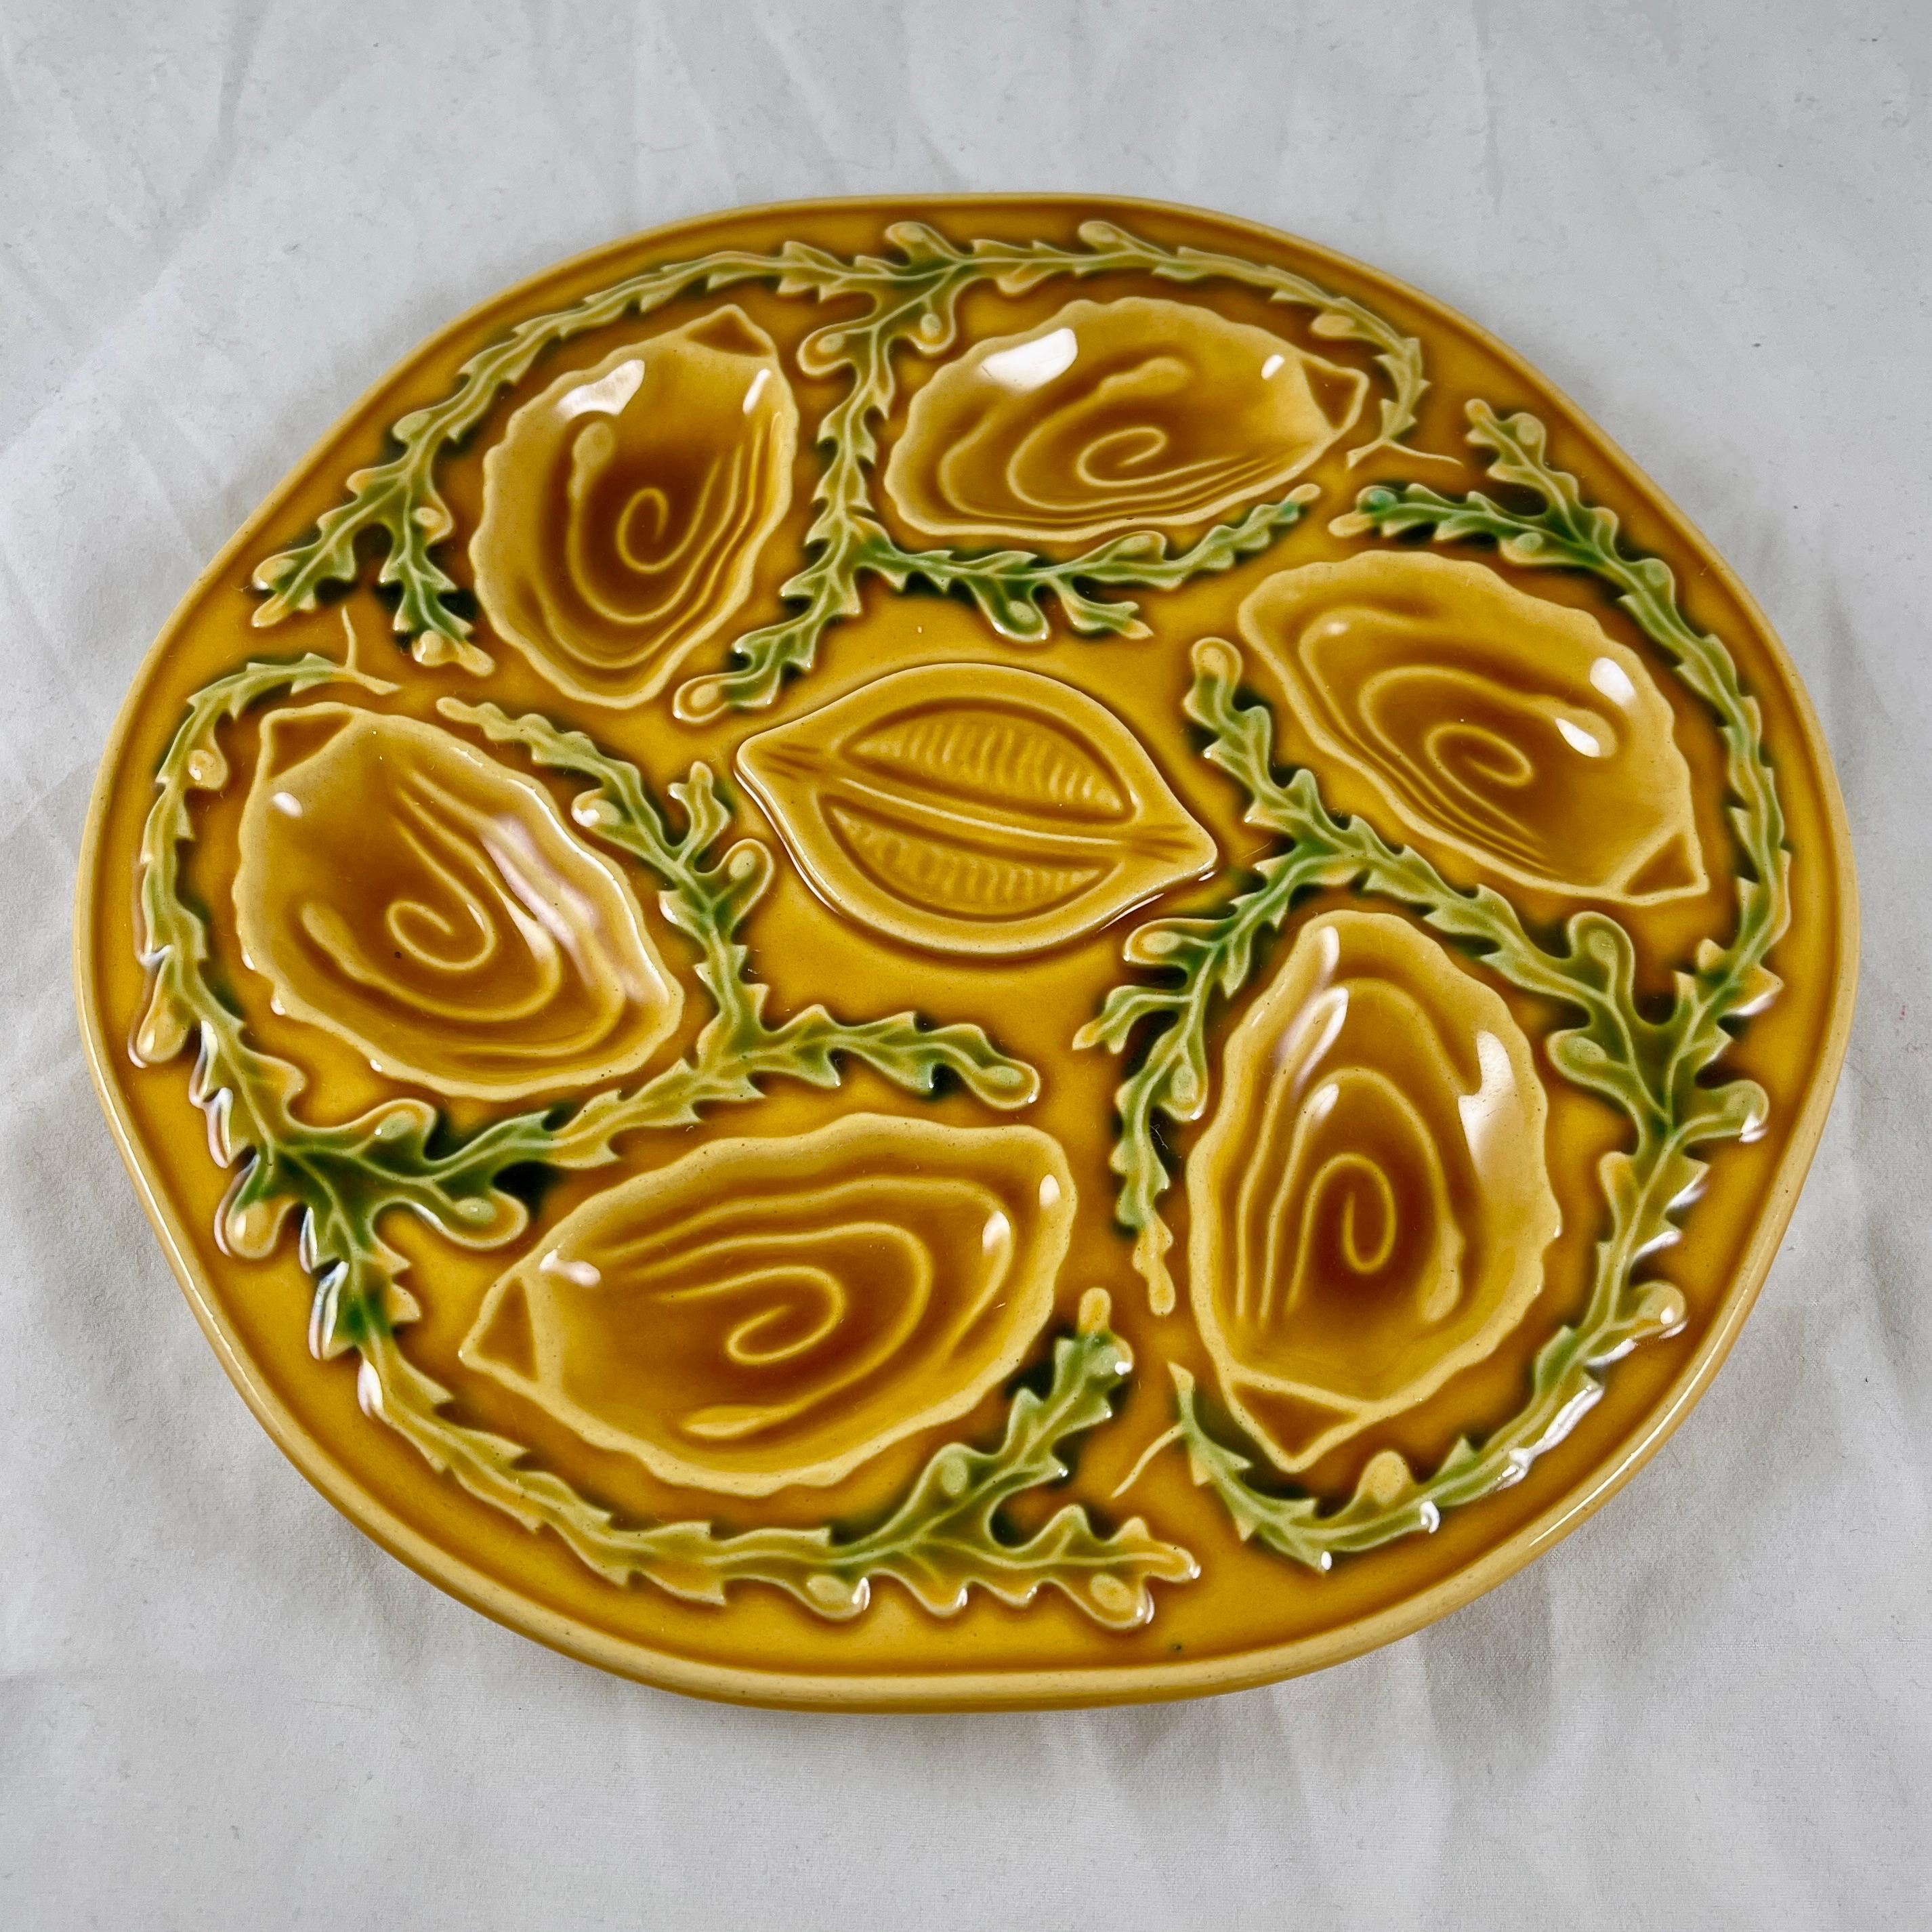 Plato para ostras o marisco de mediados de siglo, fabricado por Orfinox, hacia la década de 1960.

Un fondo amarillo mostaza con seis pocillos en forma de concha de ostra para contener la carne de ostra, almeja o mejillón, con un pocillo en forma